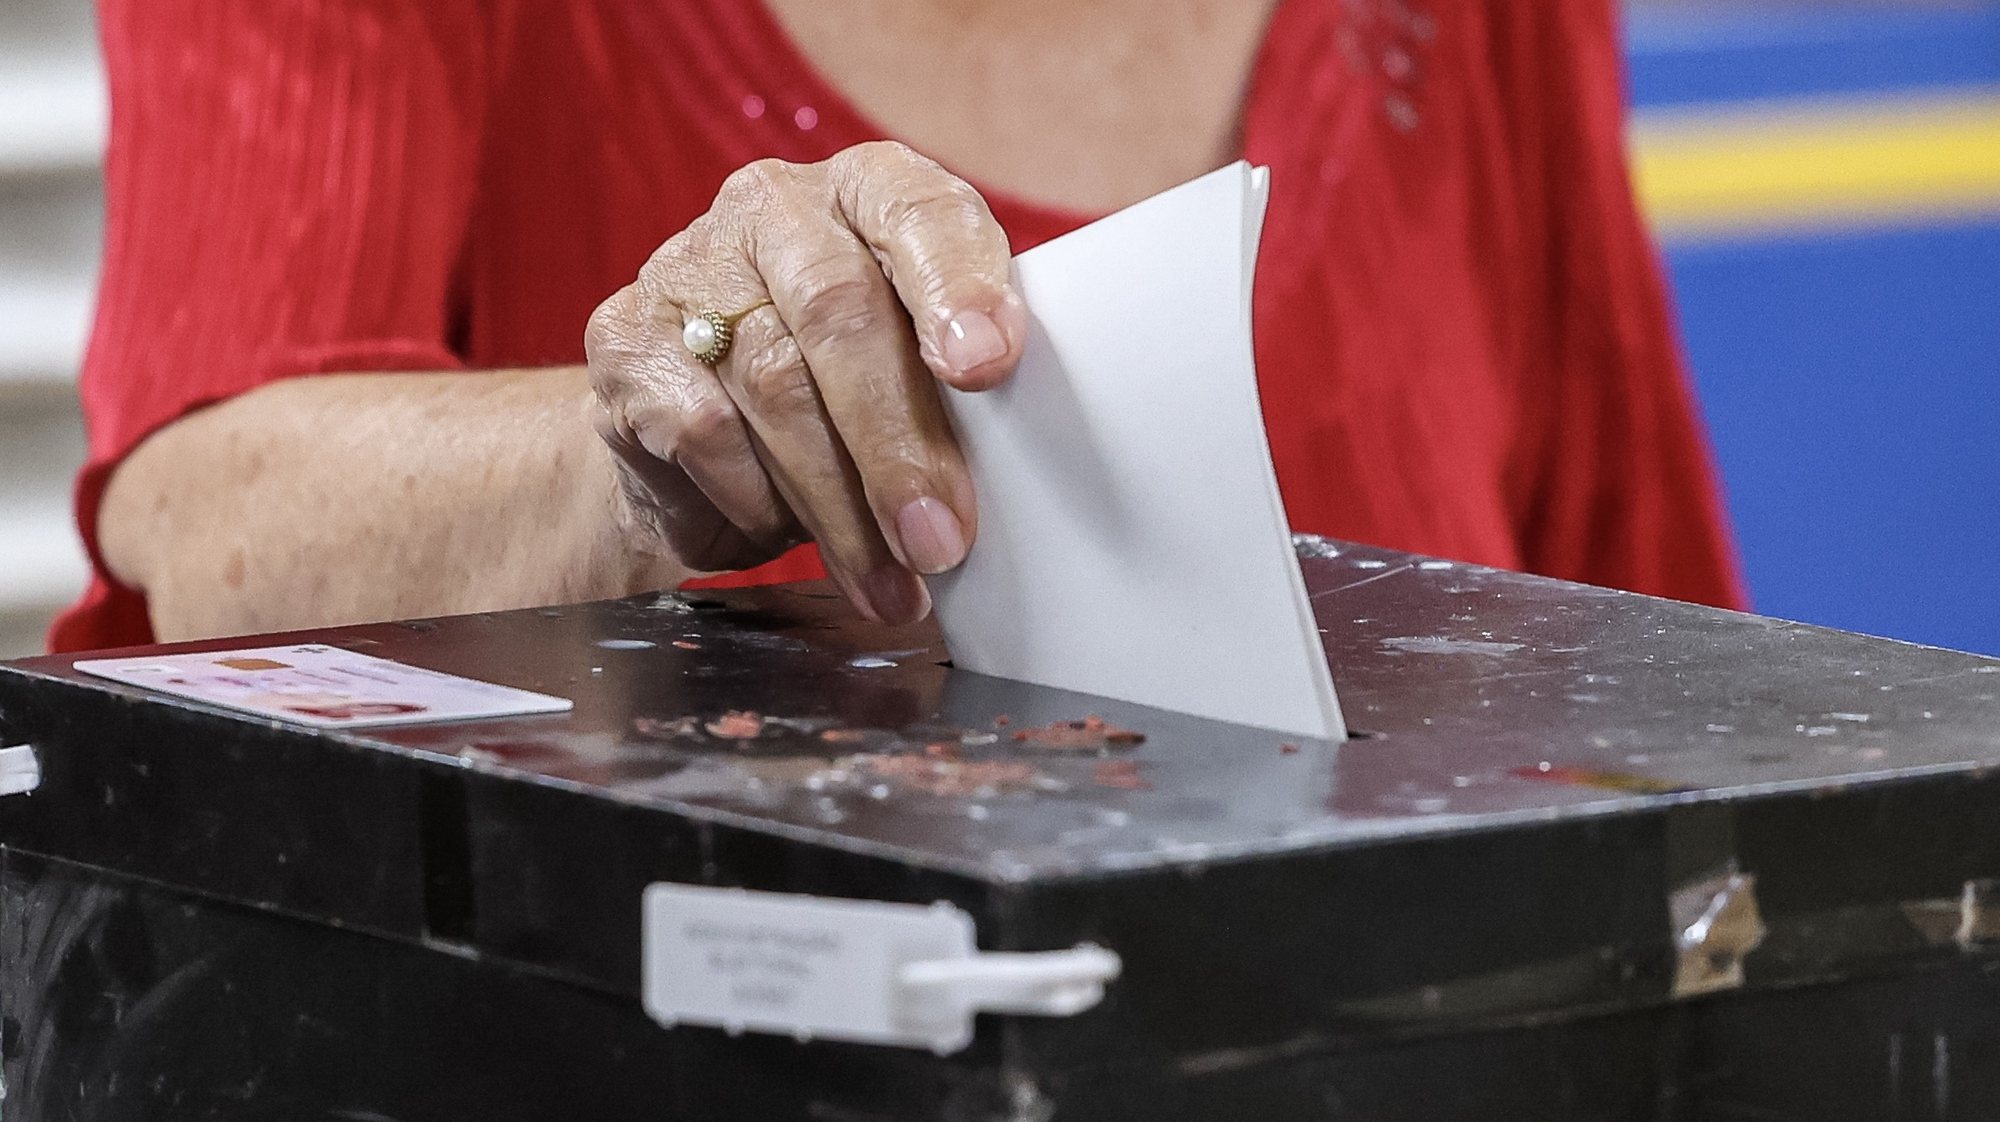 Votação para as eleições legislativas da Madeira, na Escola da Ajuda, Funchal, Madeira, 24 de setembro de 2023. As legislativas da Madeira decorrem em 24 de setembro, com 13 candidaturas a disputar os 47 lugares no parlamento regional, num círculo eleitoral único. PAULO NOVAIS/LUSA